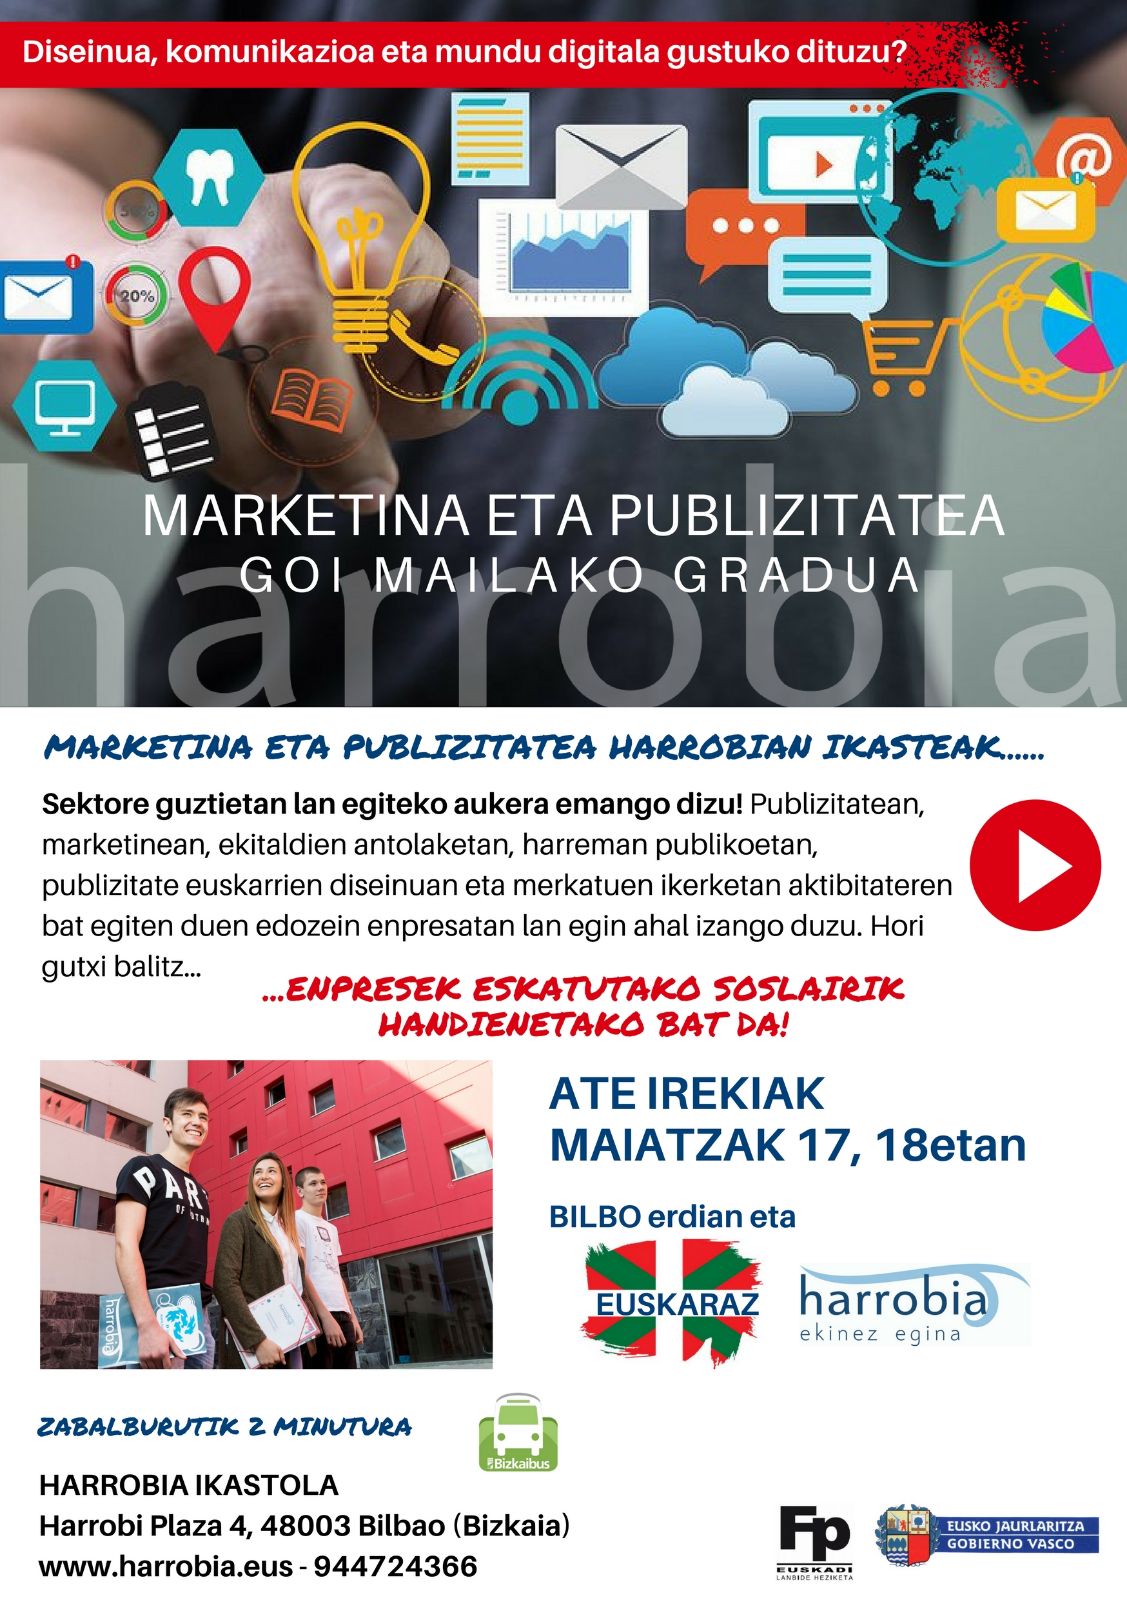 Bost plaza libre ‘Marketina eta Publizitatea’ zikloan!